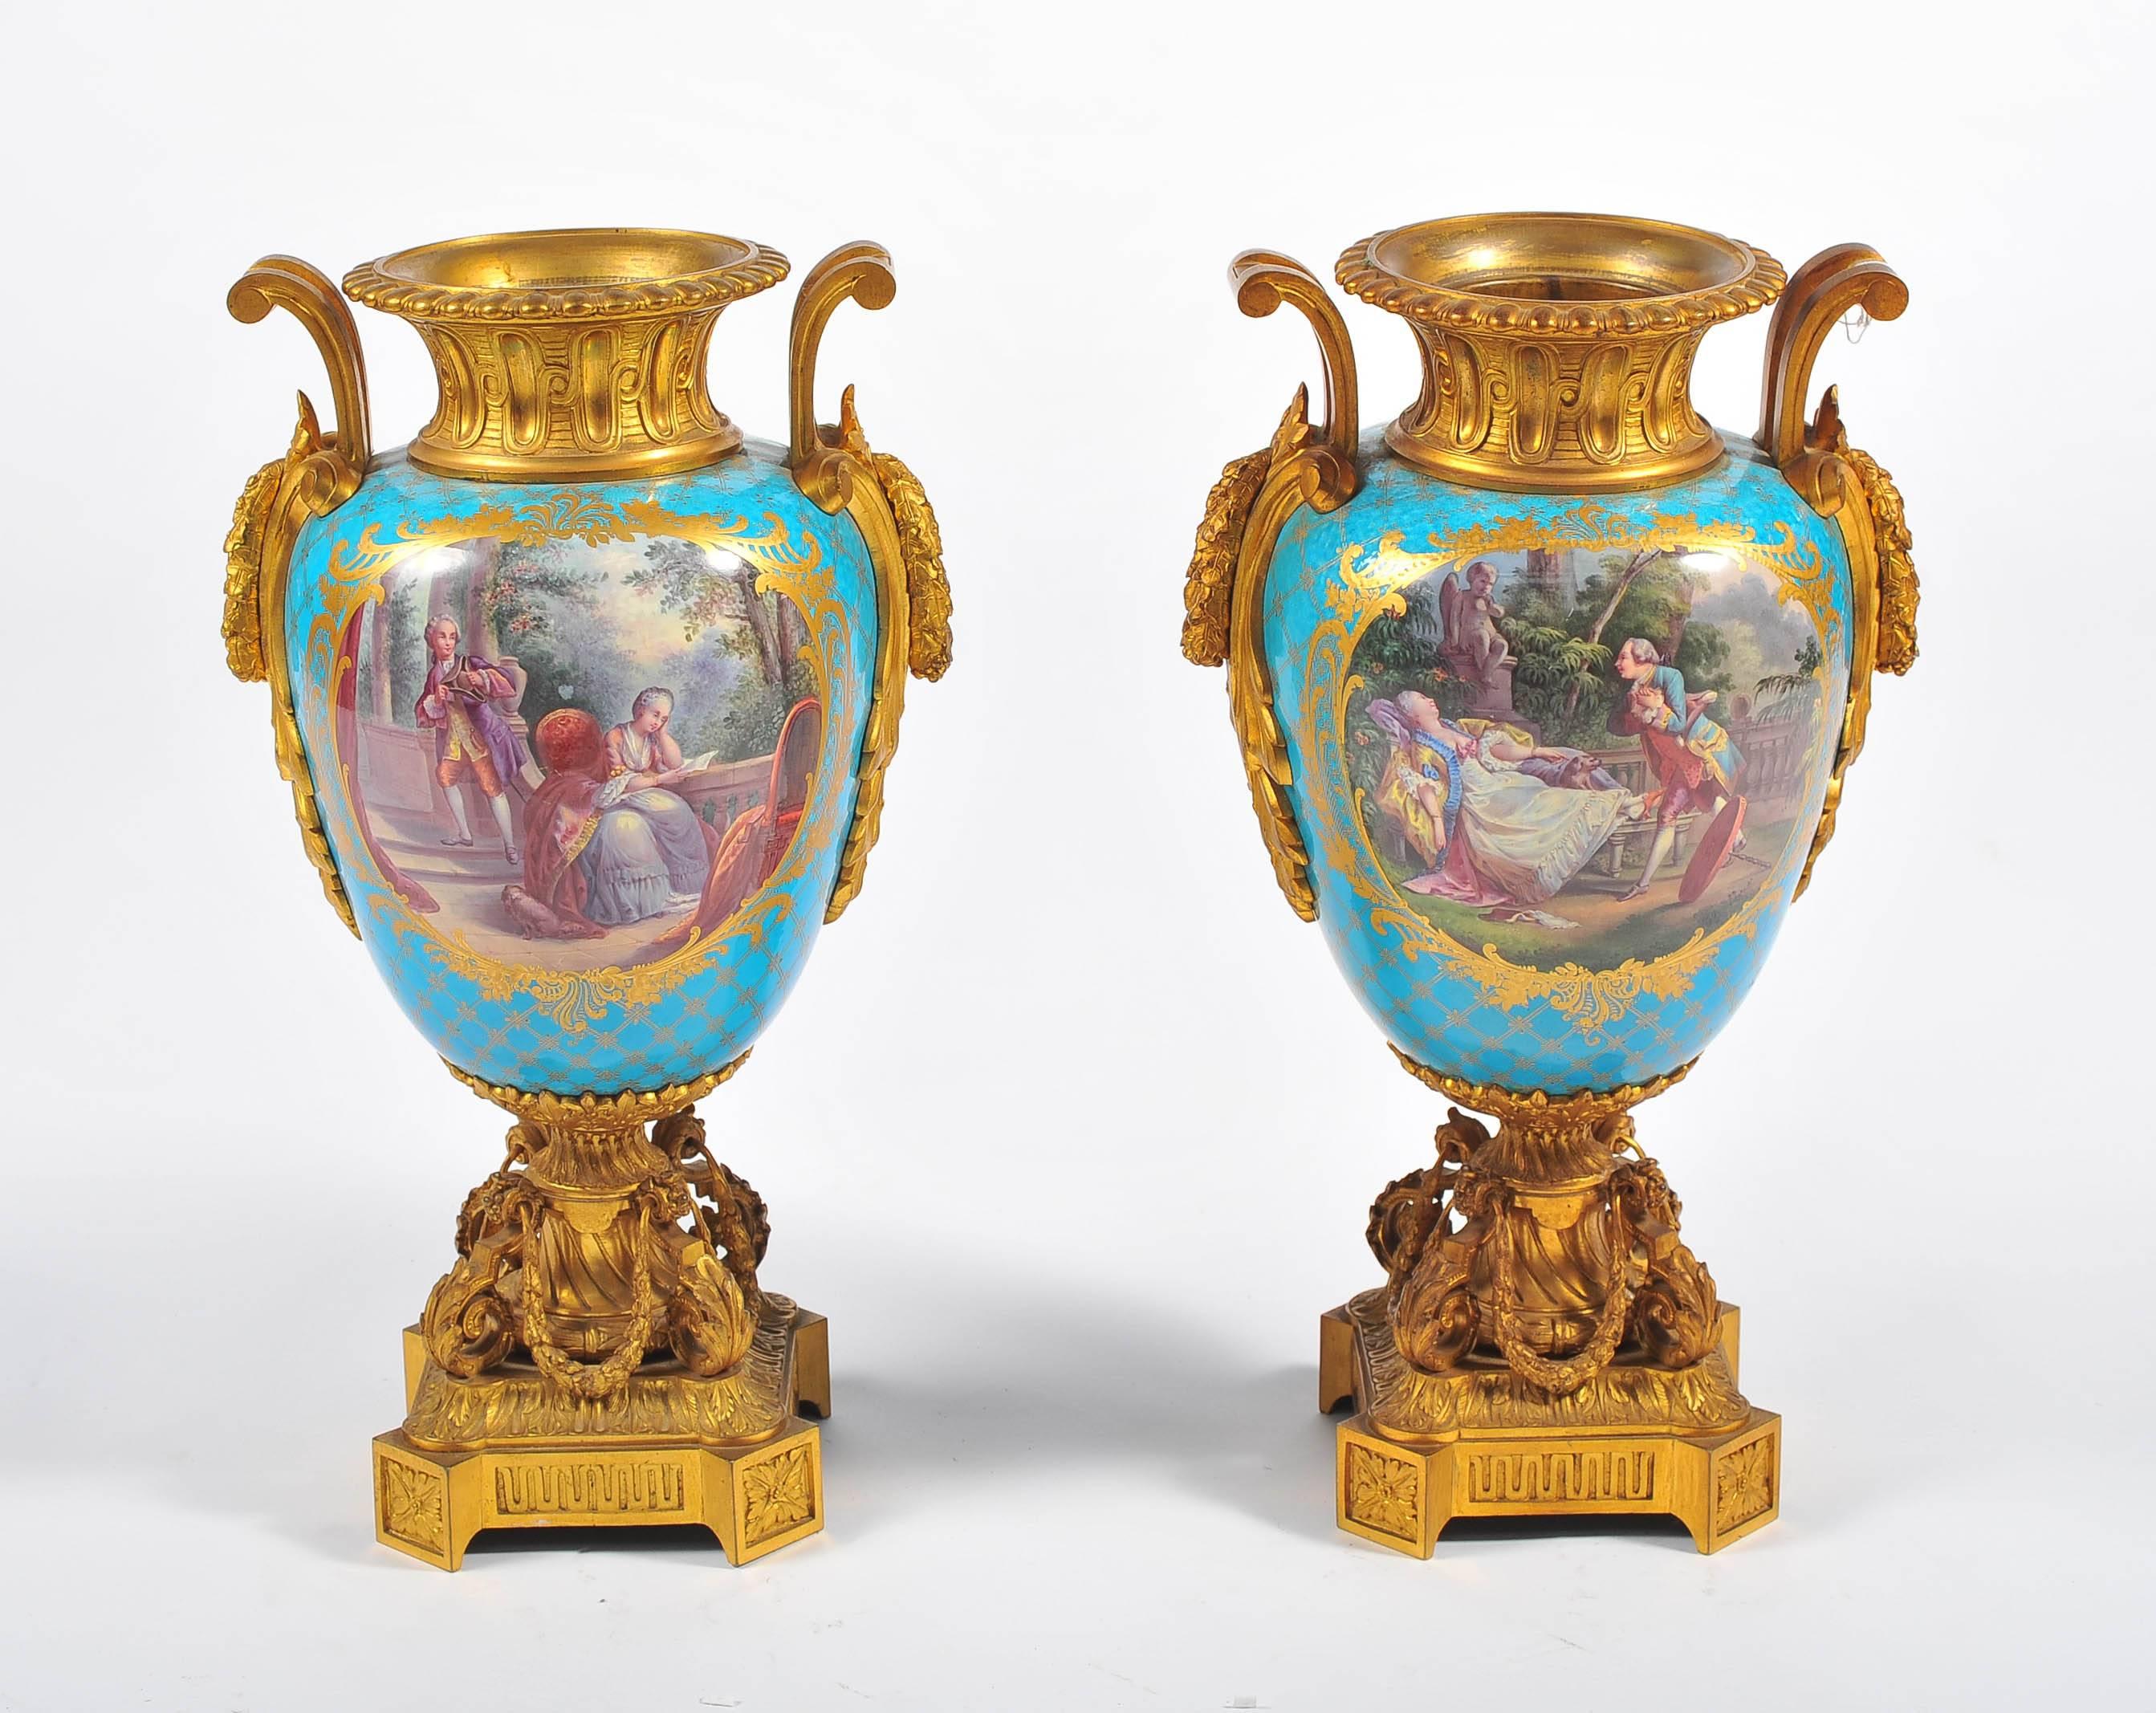 Ein hochwertiges Paar französischer Sèvres-Porzellanvasen aus dem 19. Jahrhundert mit wunderschönen vergoldeten Ormolu-Beschlägen. Klassische romantische Szenen und Putten auf türkisfarbenem Hintergrund.